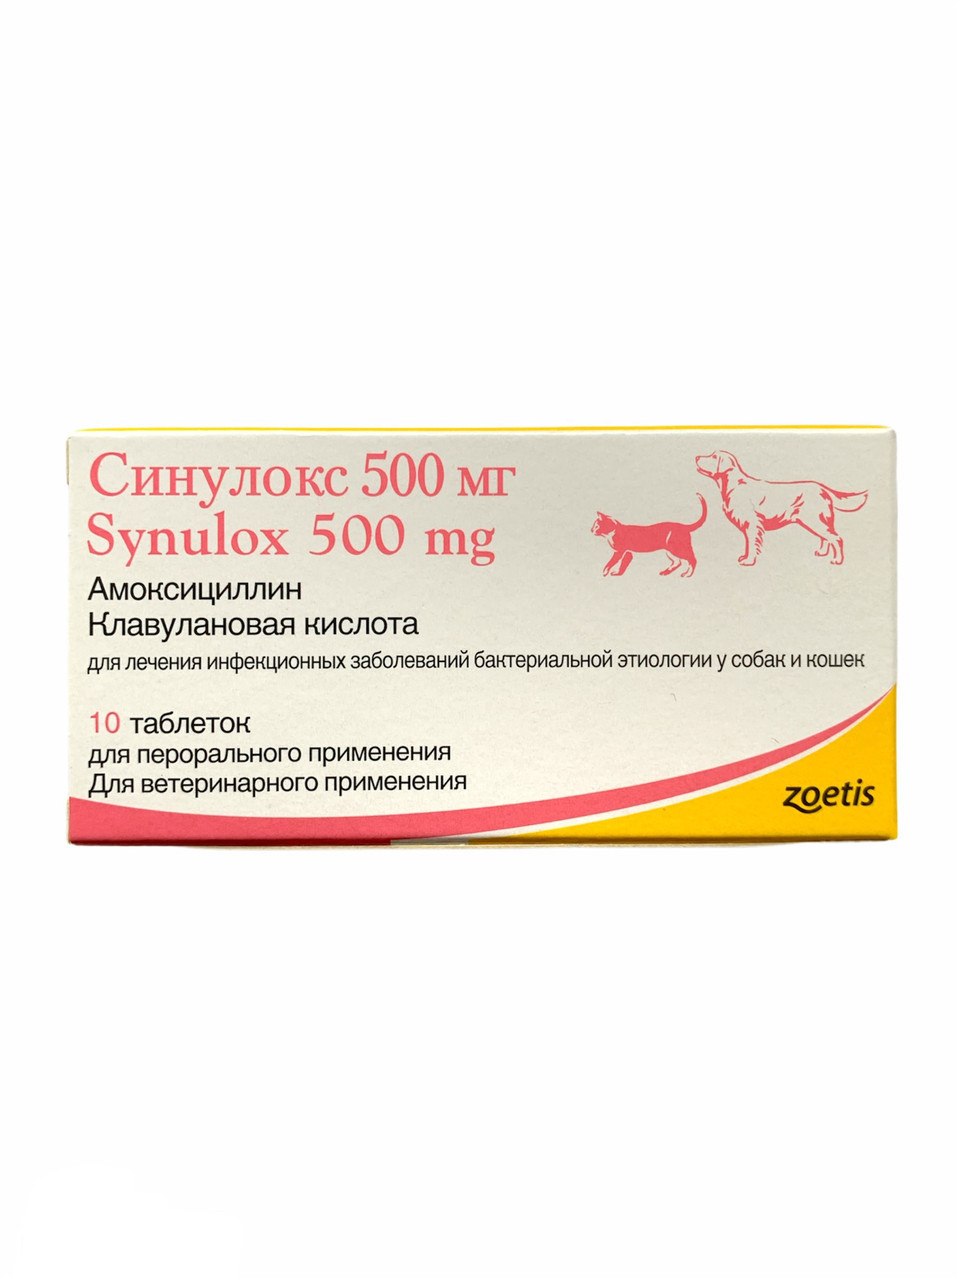 Синулокс 500 мг купить. Синулокс (500 мг 10 ТБ). Синулокс 500 мг для собак. Zoetis синулокс 500мг, 10таб. Синулокс 500 мг для собак уколы.